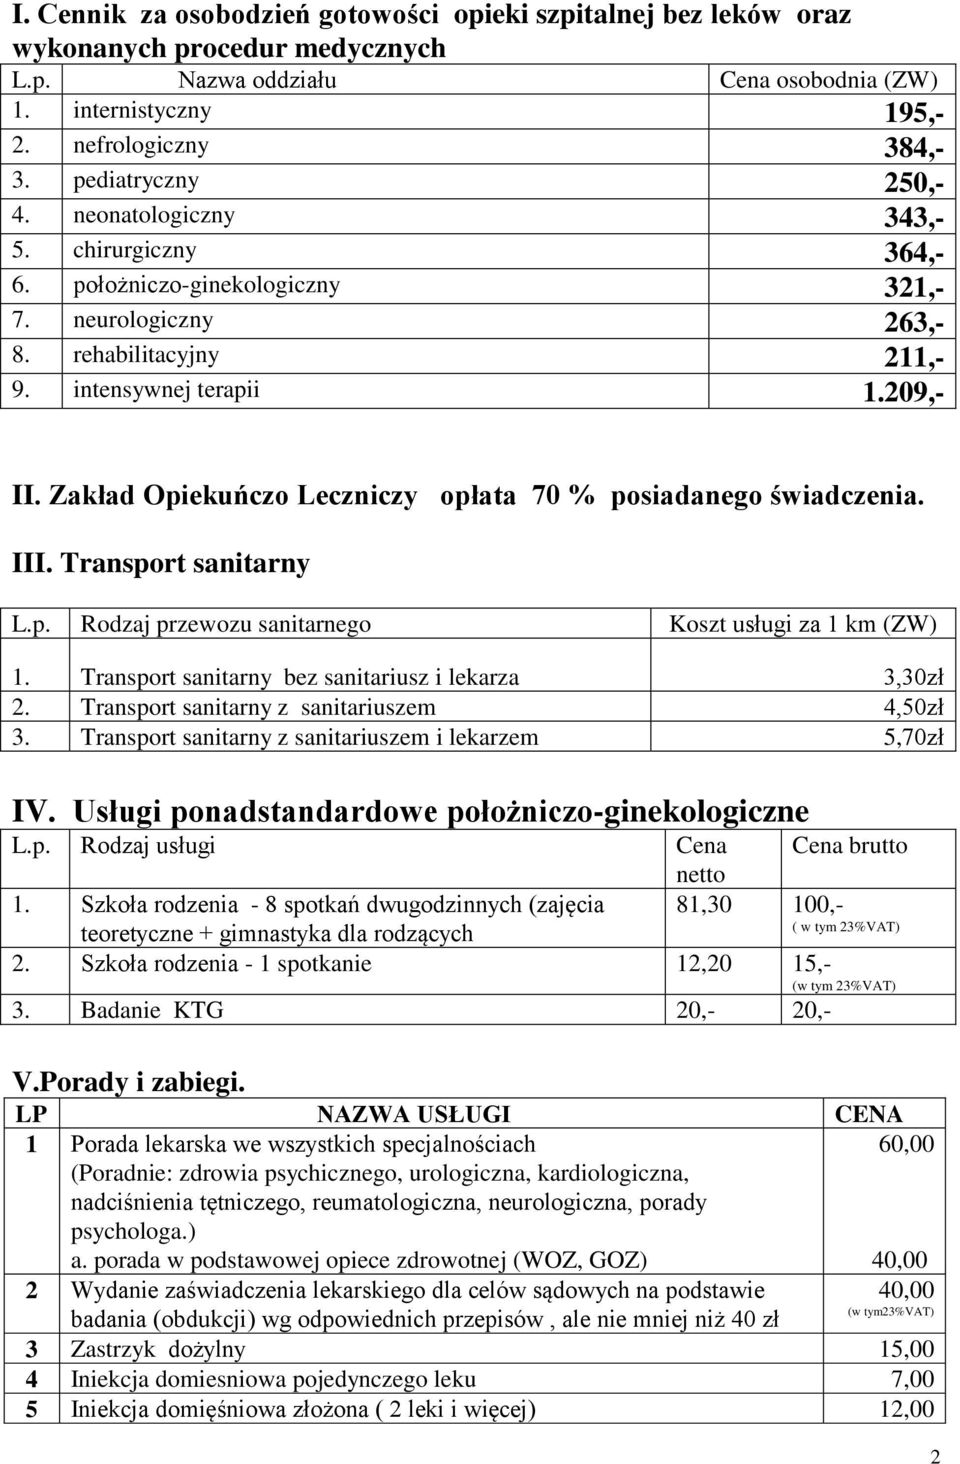 Zakład Opiekuńczo Leczniczy opłata 70 % posiadanego świadczenia. III. Transport sanitarny L.p. Rodzaj przewozu sanitarnego Koszt usługi za 1 km (ZW) 1.